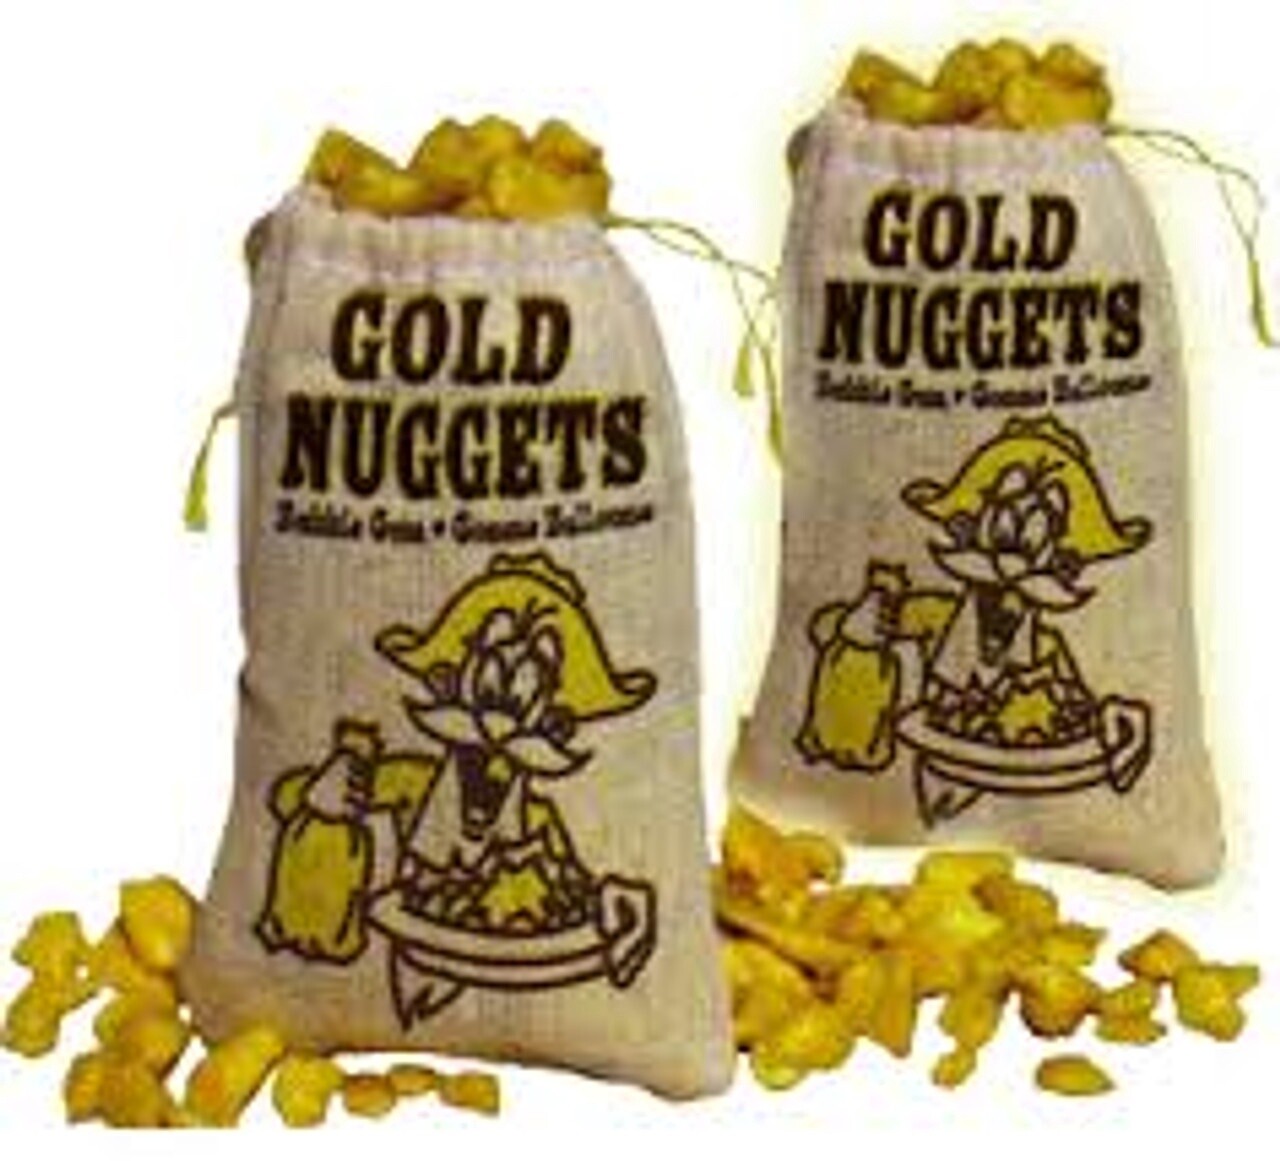 Gold nuggets Bubble Gum pouch